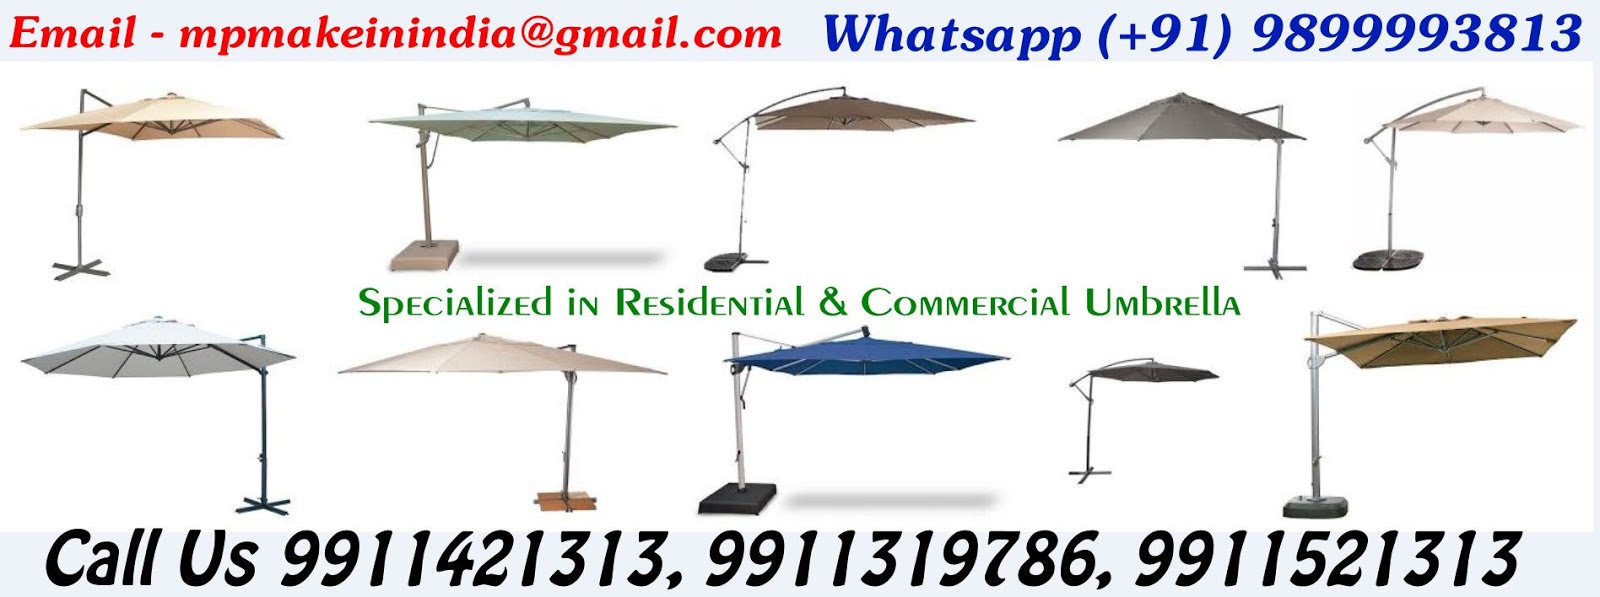 Cantilever Umbrella, Outdoor Garden Umbrella, Side Pole Umbrellas - Manufacturers, Suppliers India